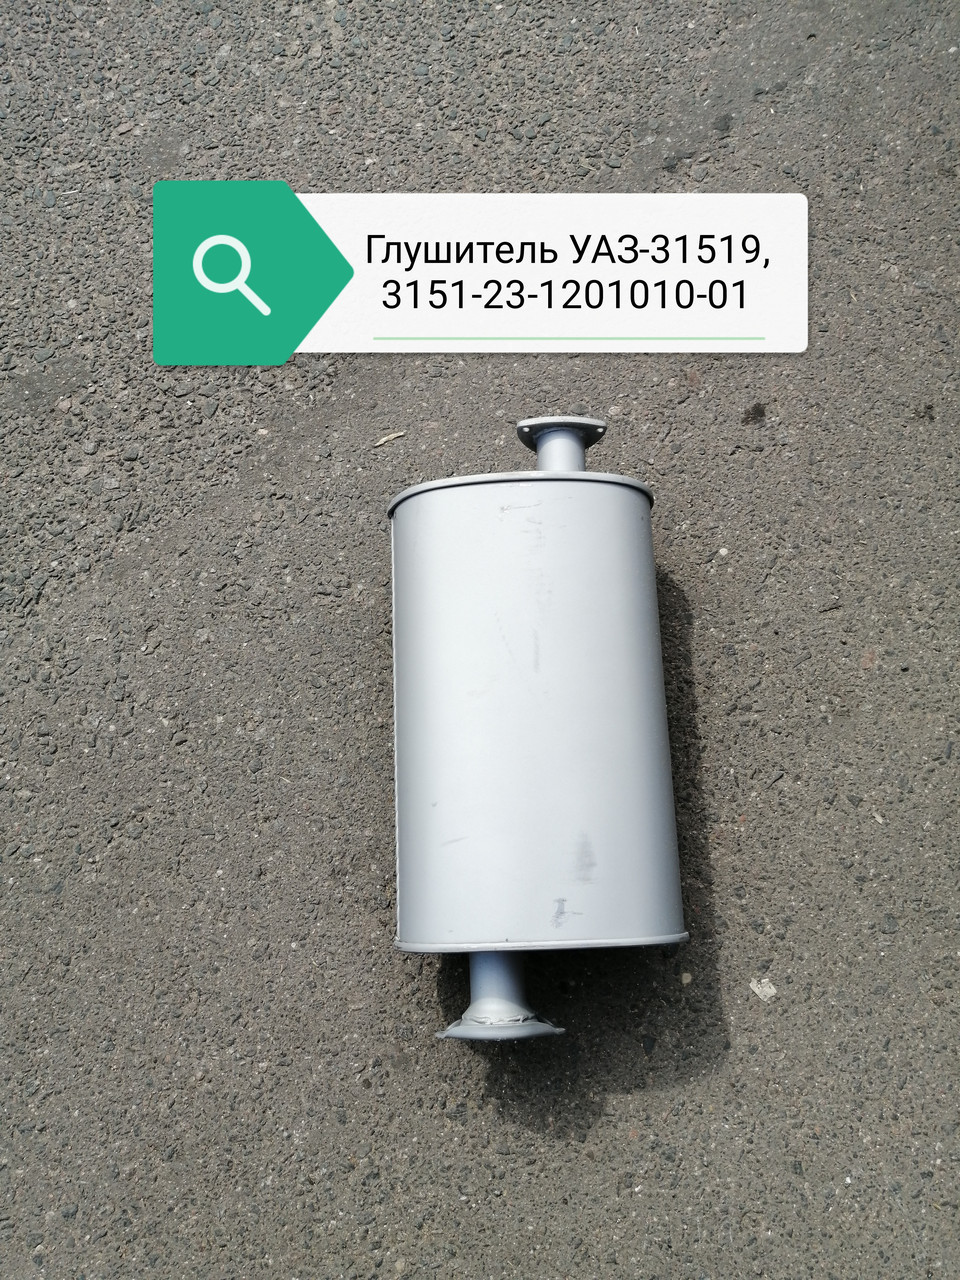 Глушитель УАЗ-31519 в сб , 3151-23-1201010-01